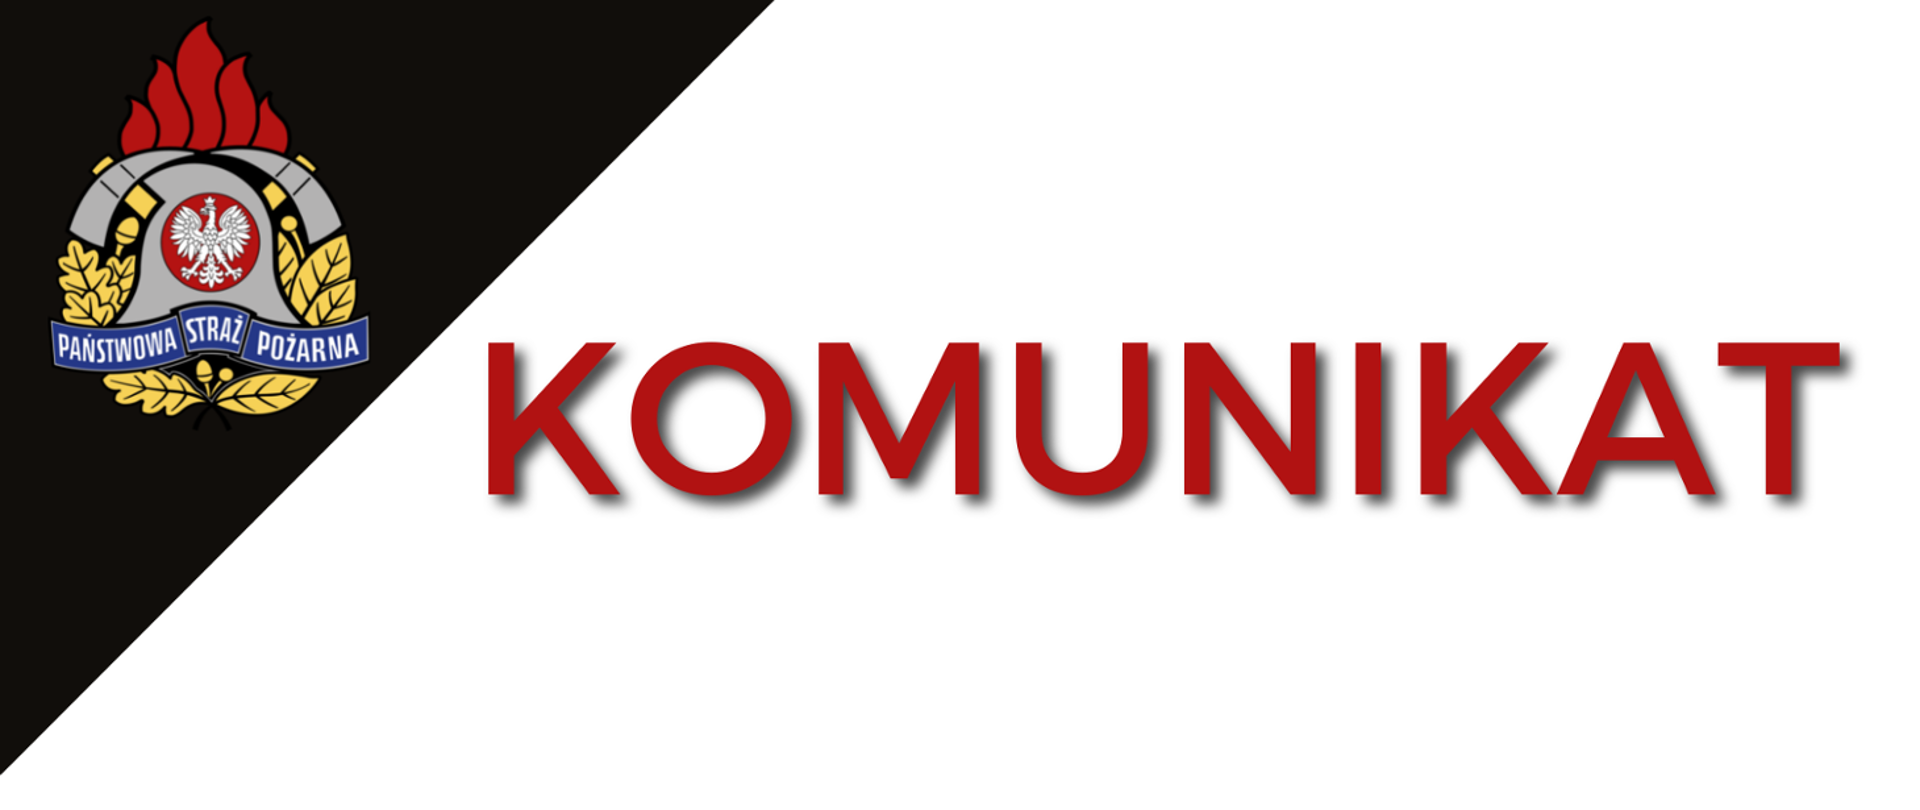 Komunikat logo